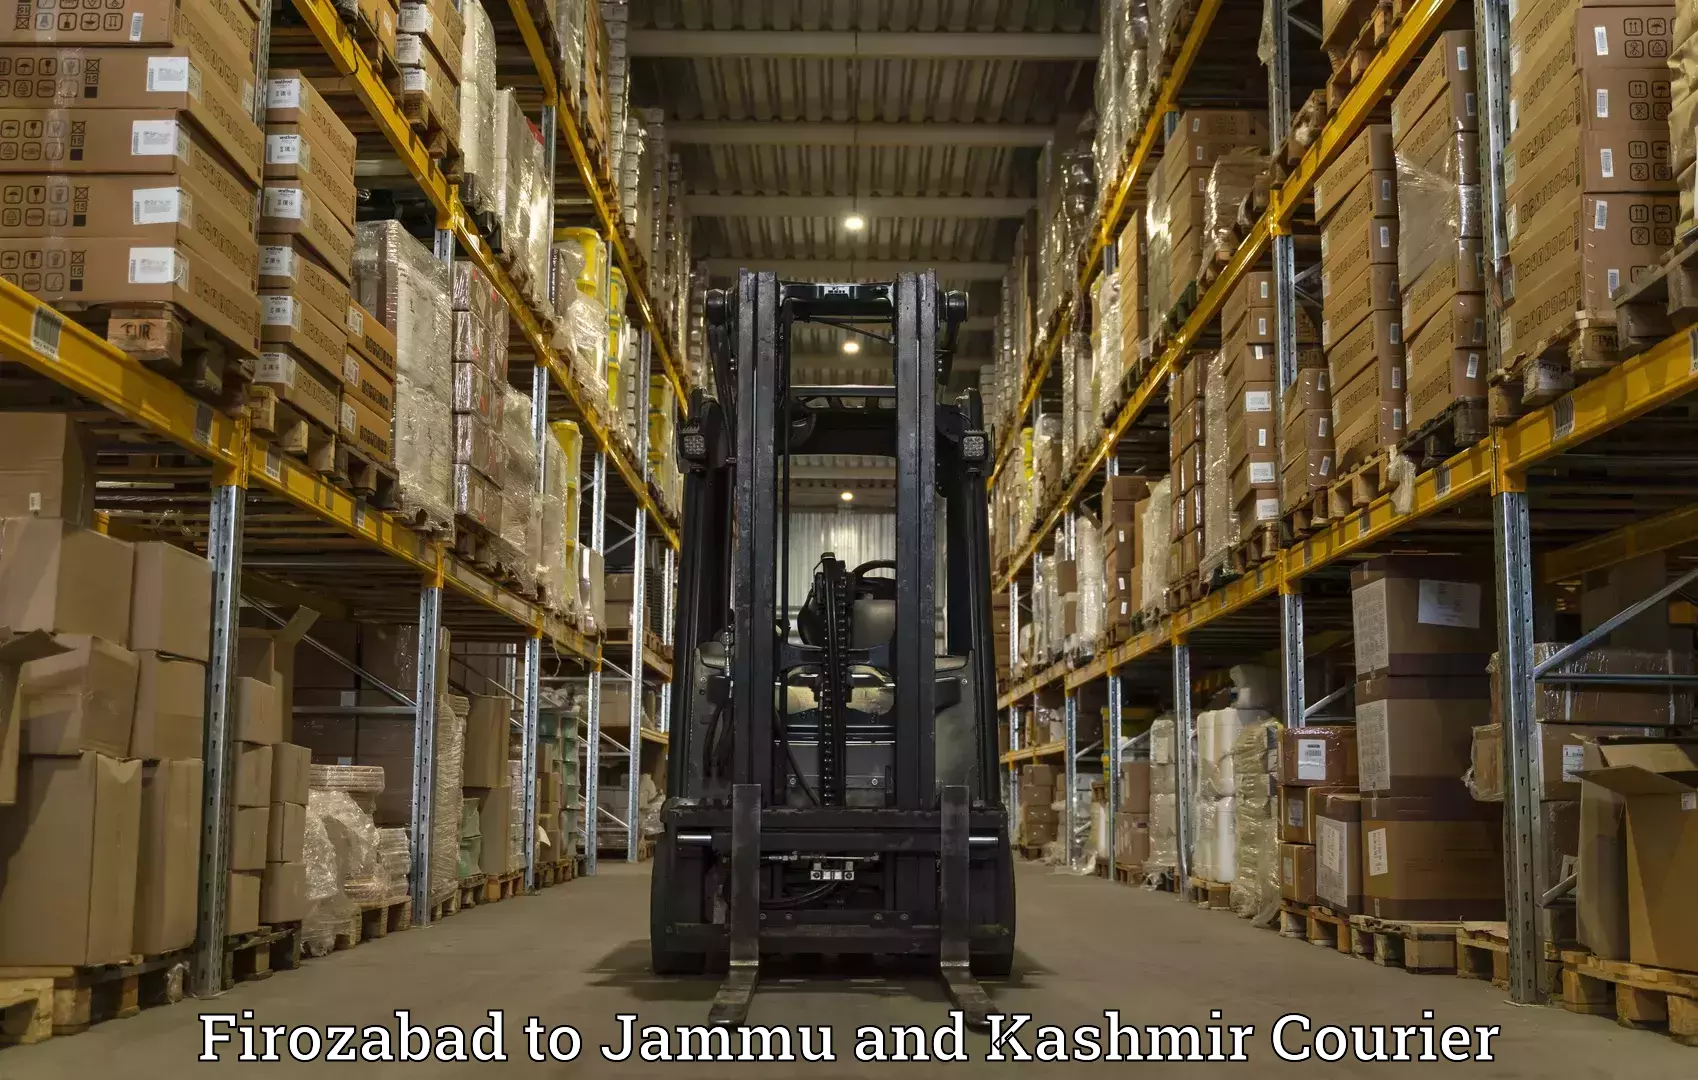 Express shipping Firozabad to University of Kashmir Srinagar